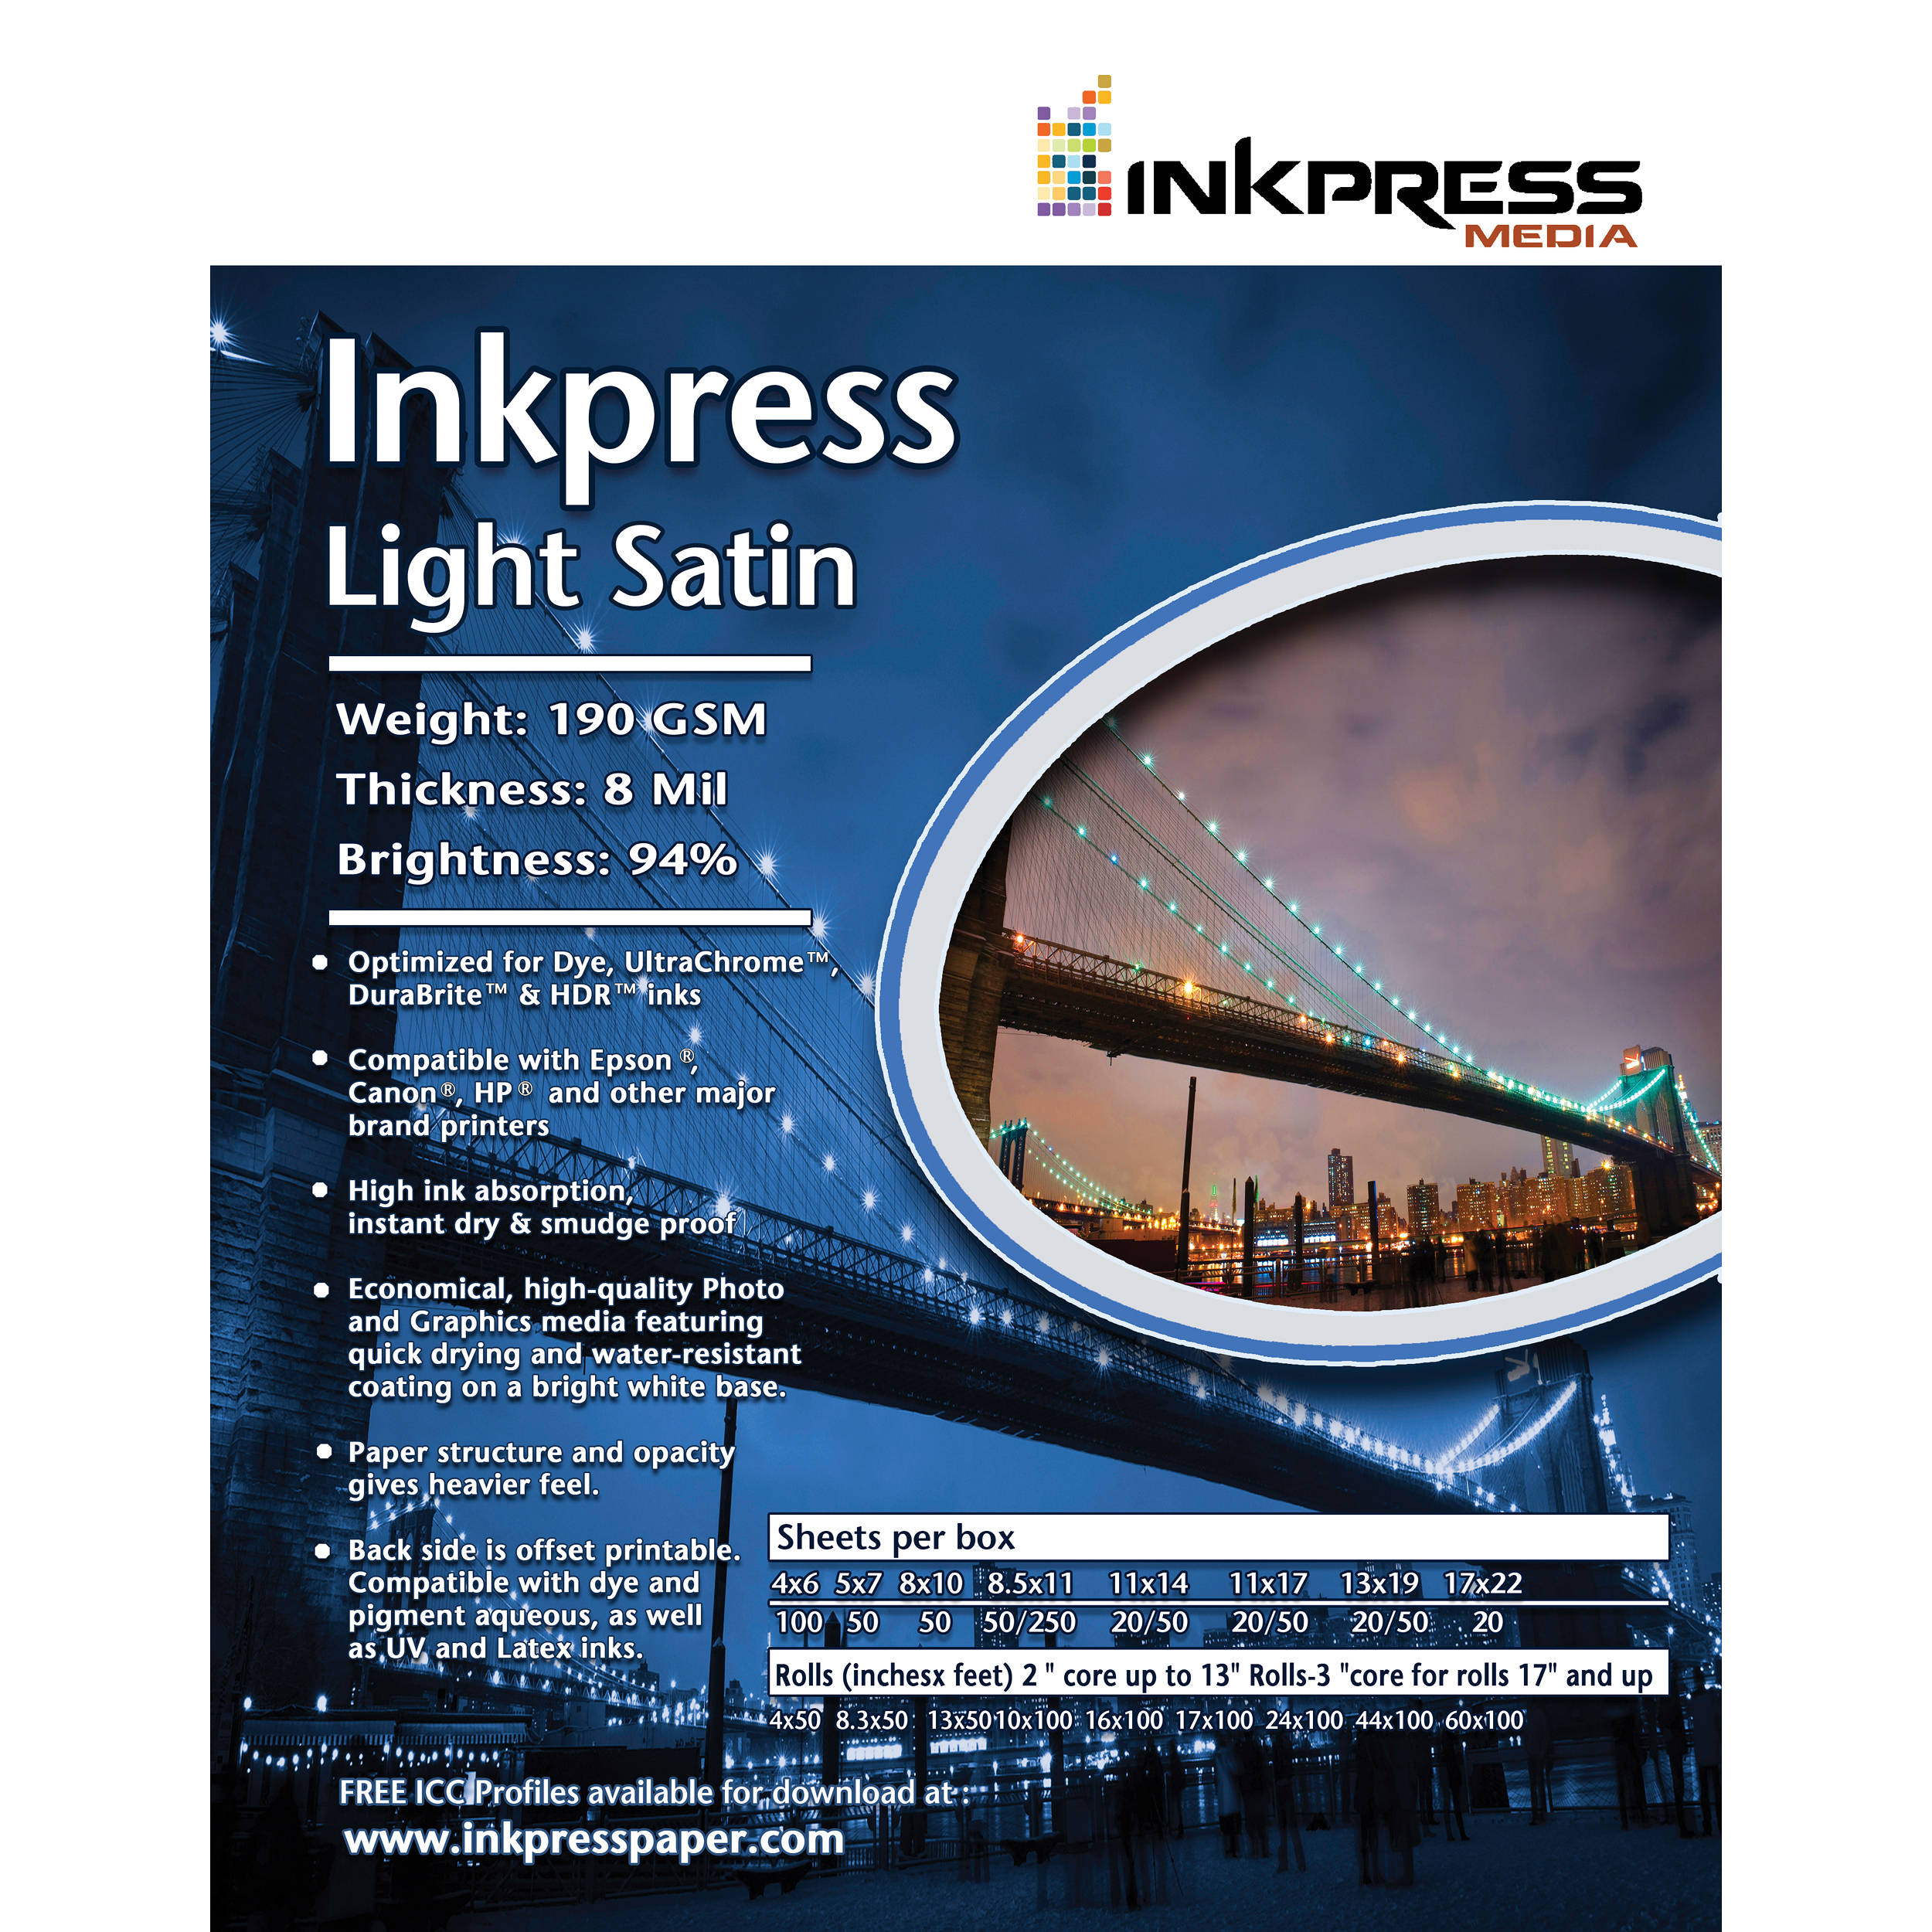 Inkpress Media Light Satin (44.0" Roll)